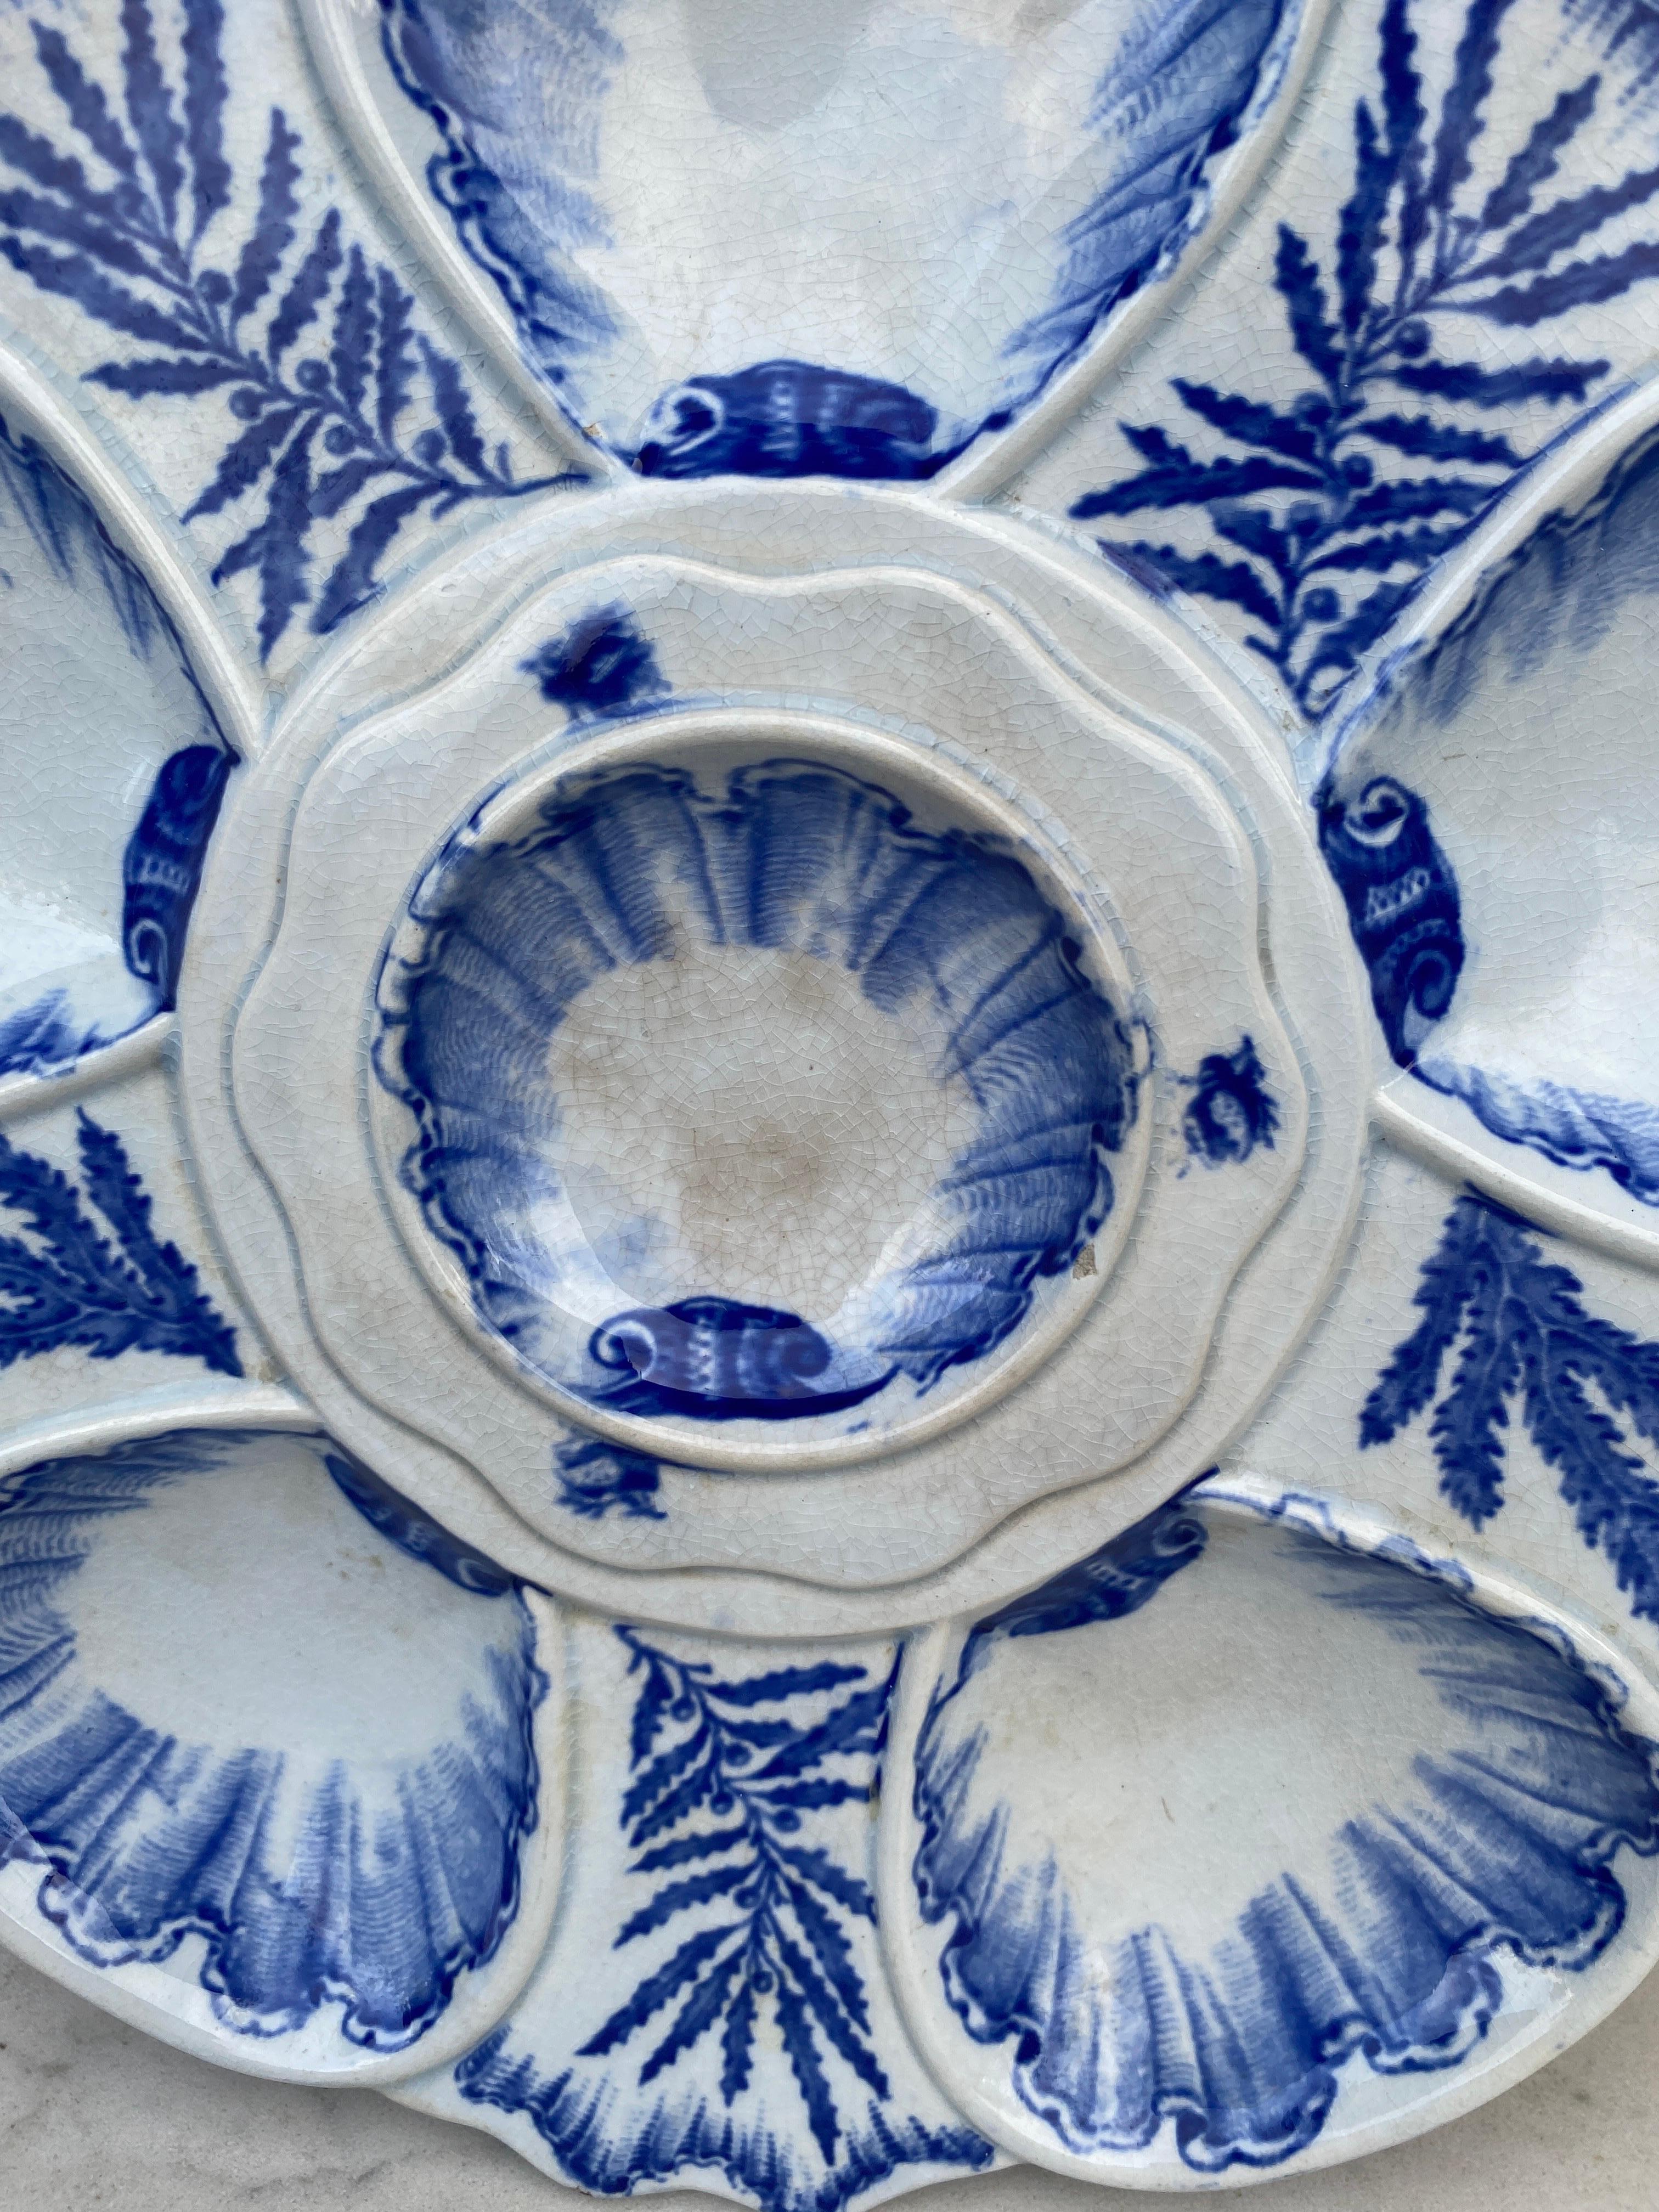 Elégante assiette à huîtres bleue et blanche signée Bordeaux Vieillard, vers 1890.
Six puits entourés d'algues bleues de différentes sortes.